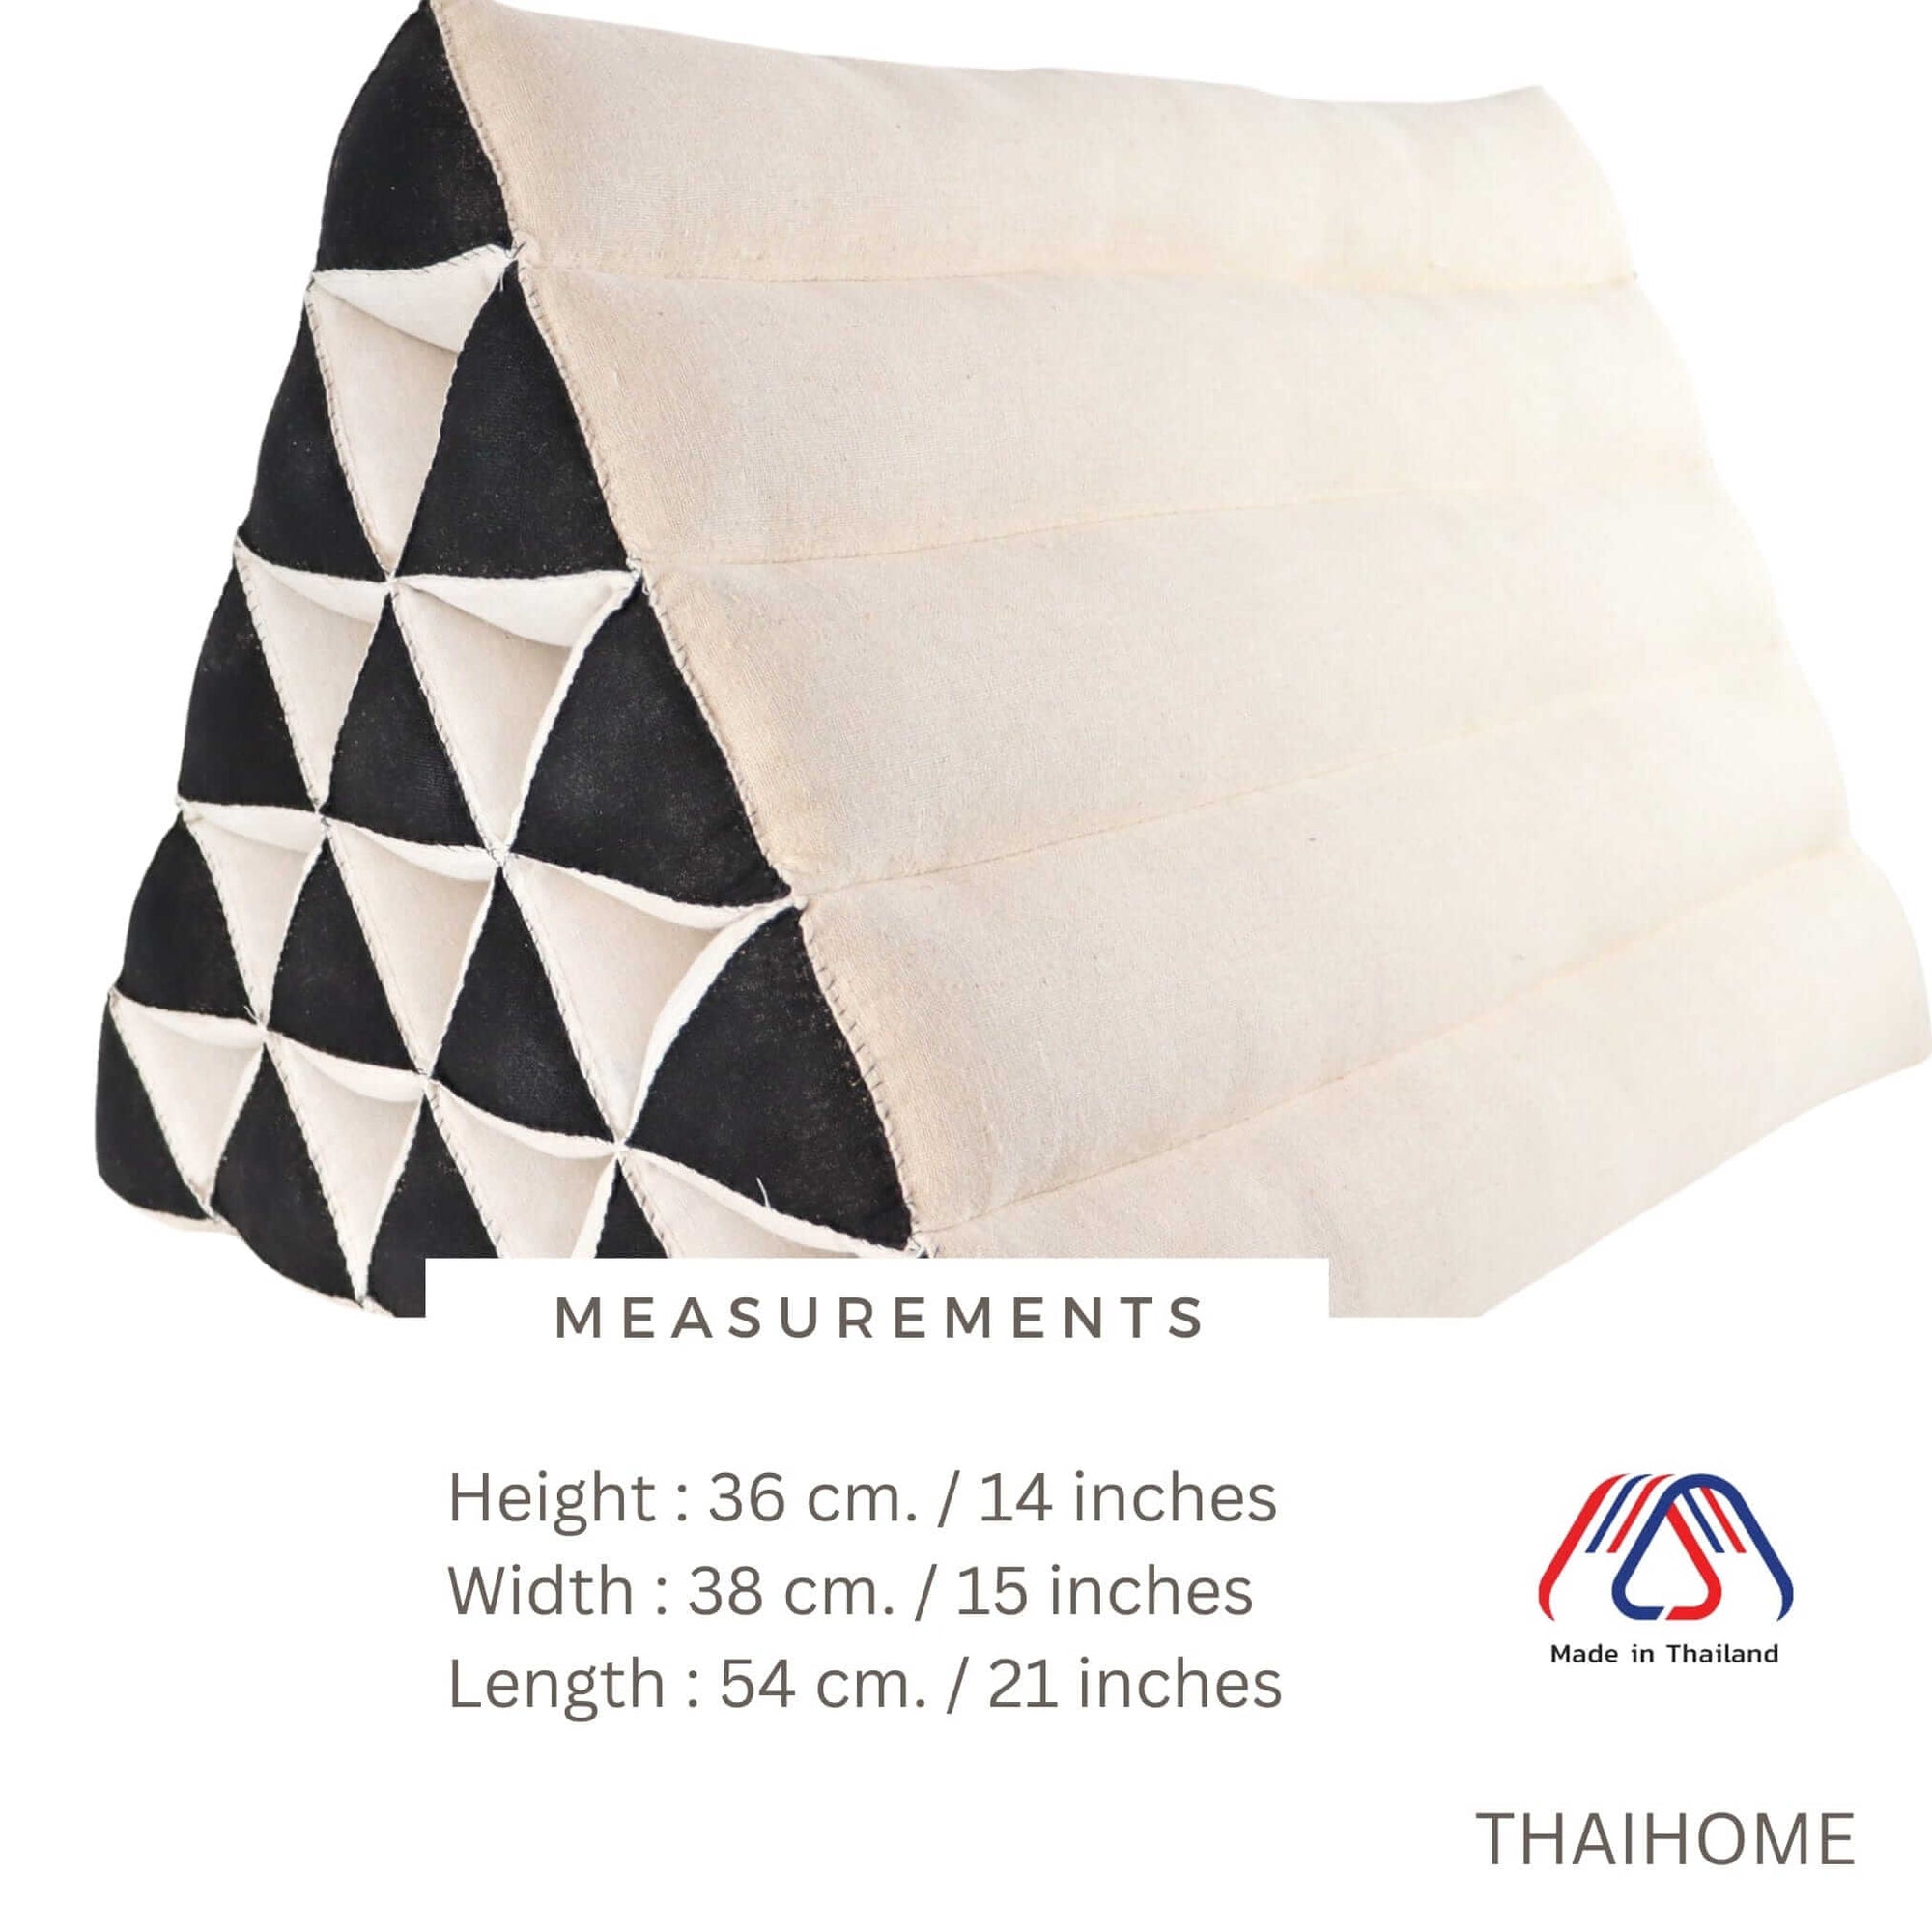 THAIHOME Triangle Cushion KA MON CHAN - Thai Triangle Cushion (White and Black)